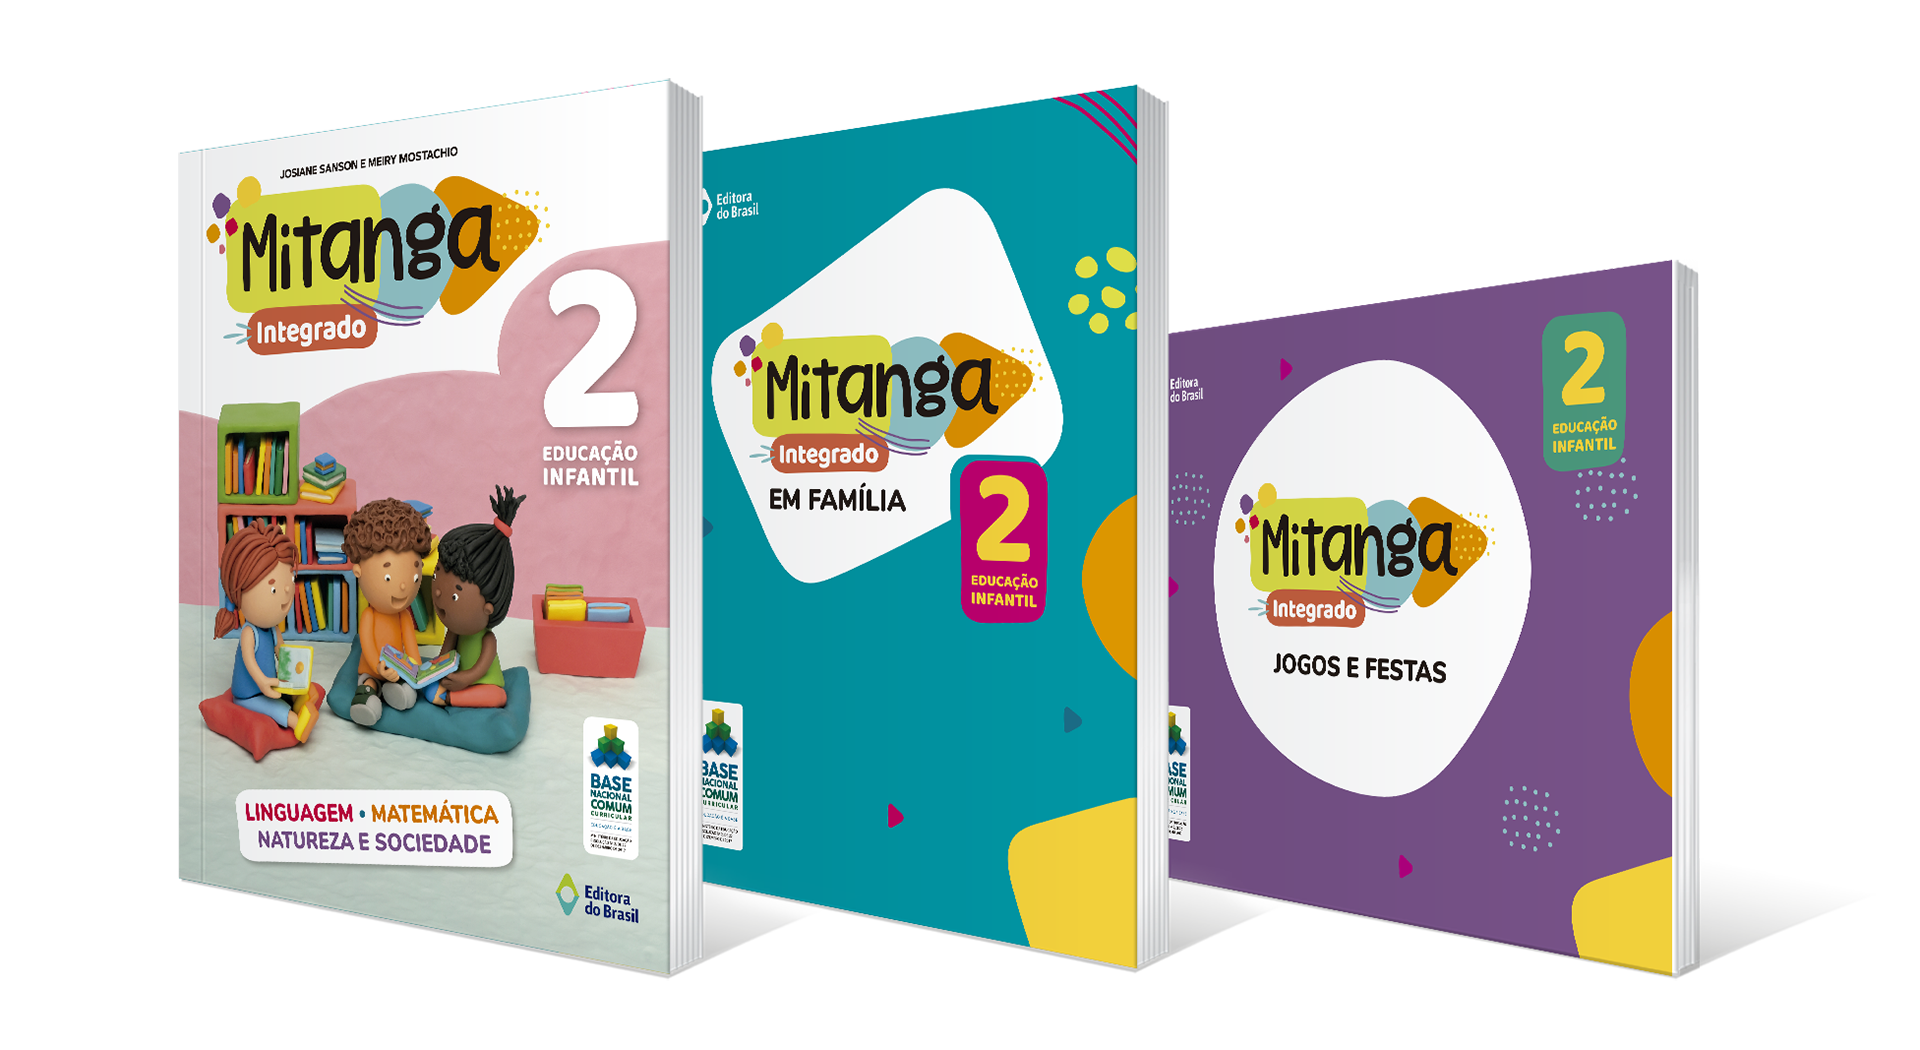 Mitanga Integrado 2 - Educação Infantil